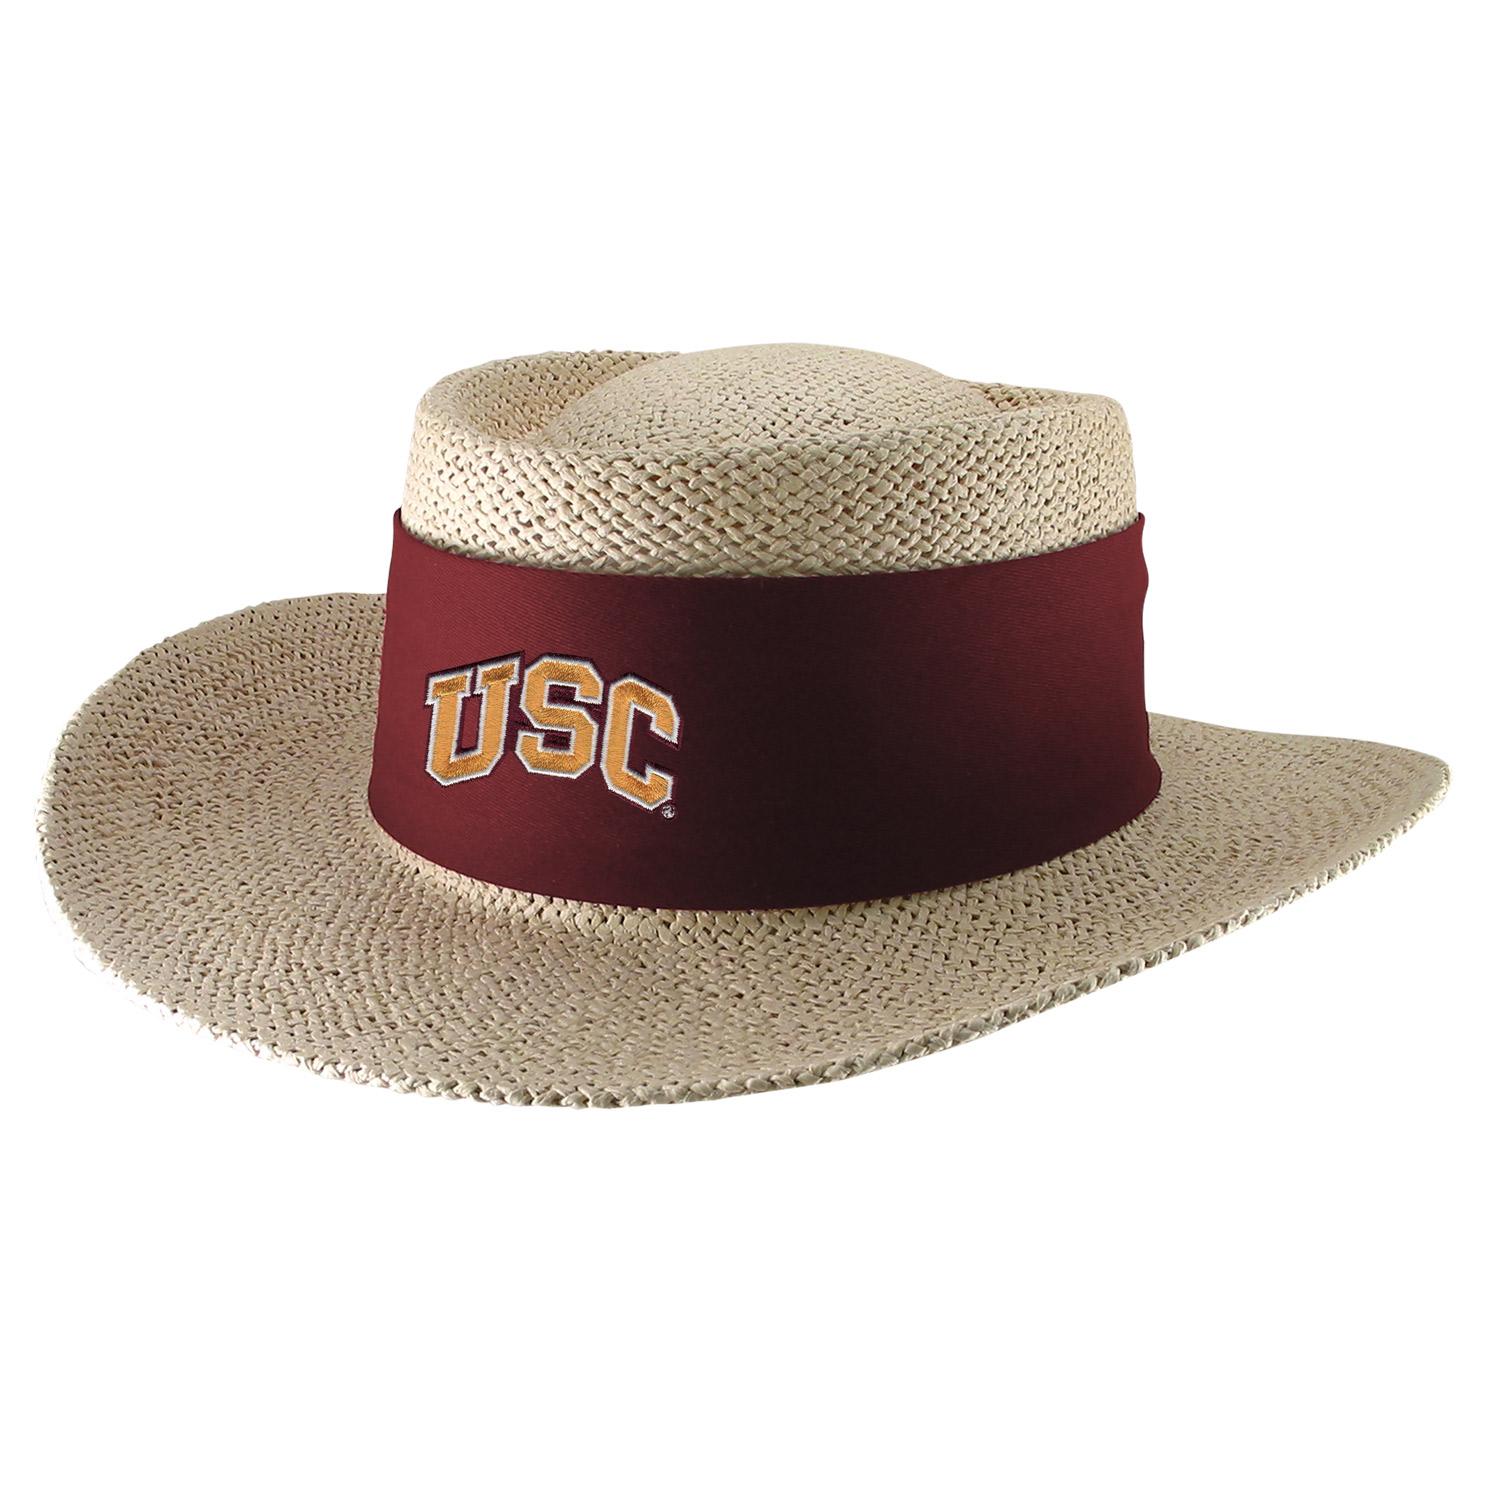 USC Arch Men's Birch Gambler Hat Tan by LogoFit image01